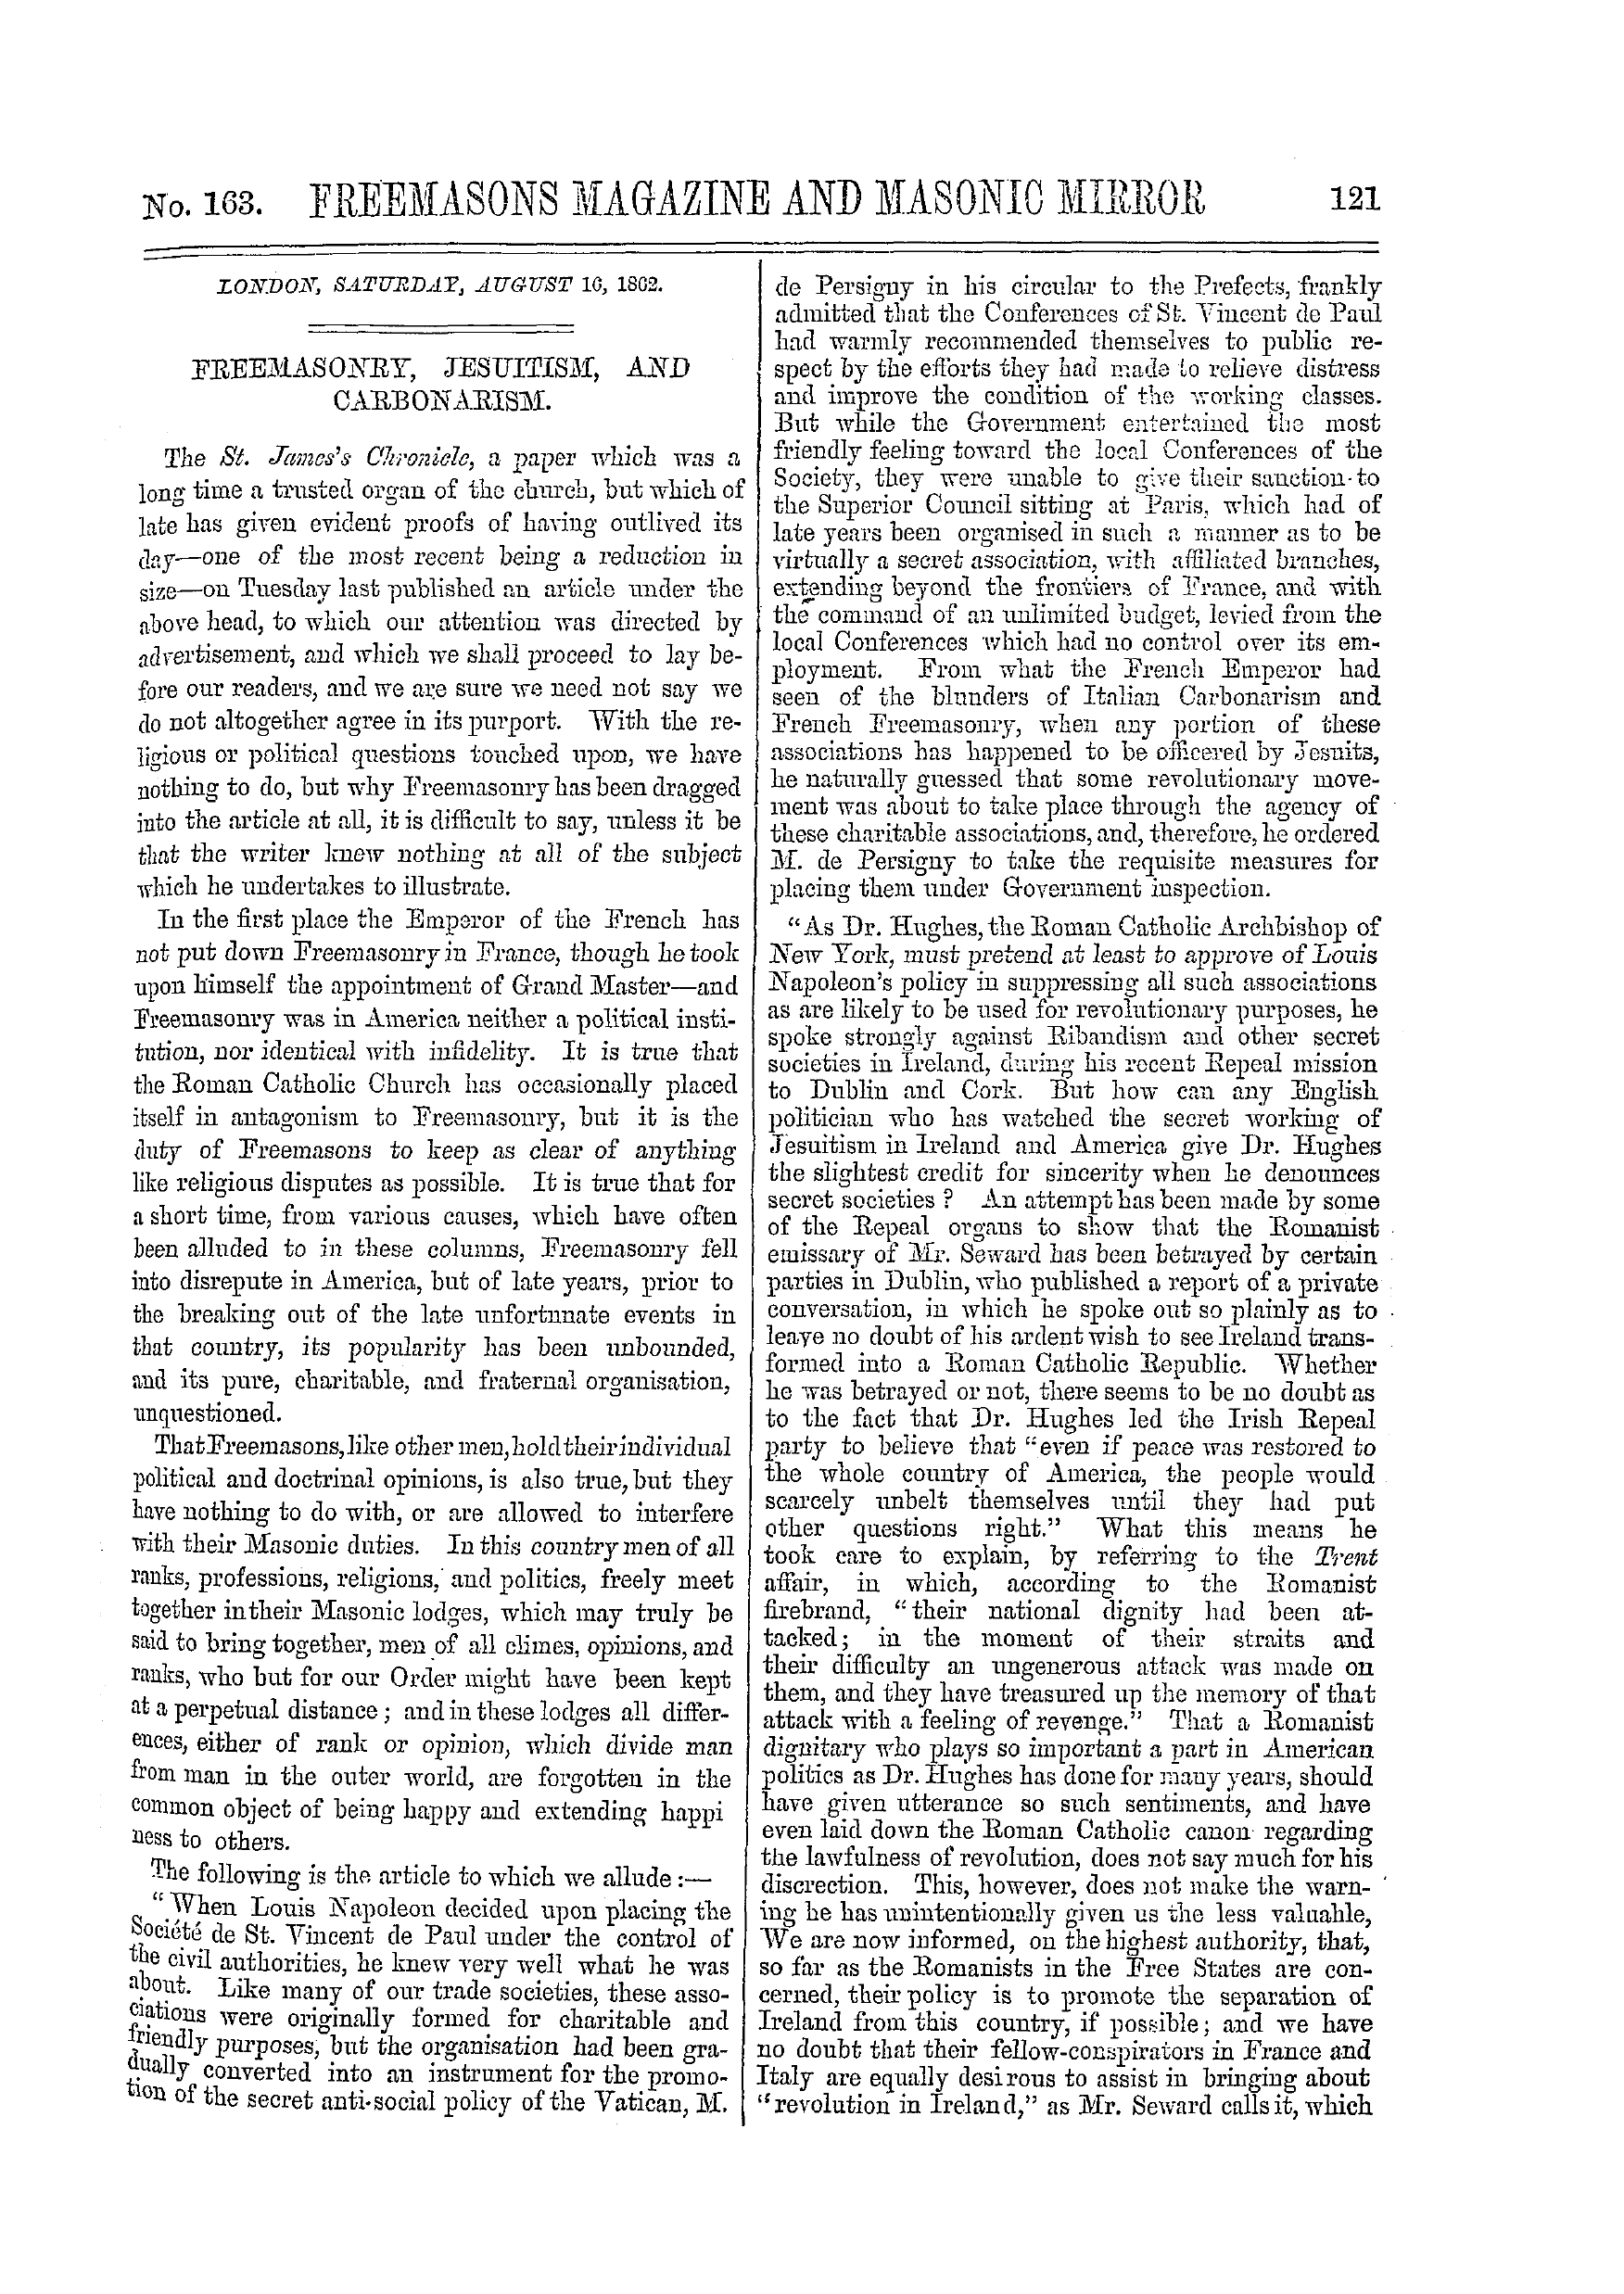 The Freemasons' Monthly Magazine: 1862-08-16: 1